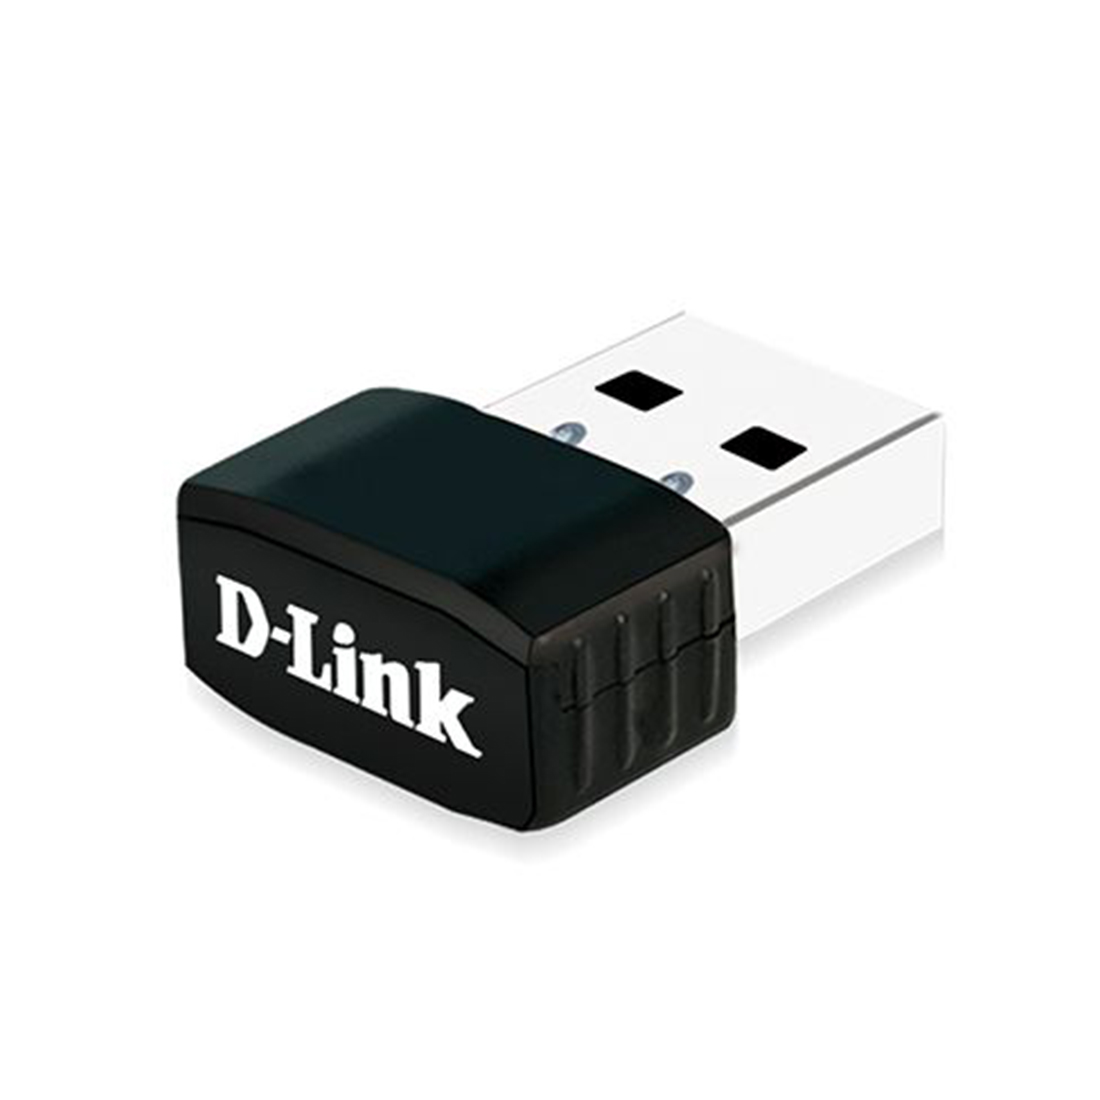 купить USB адаптер, D-Link, DWA-131/F1A, 300мб/с 802.11b/g/n 15 dBm. в Алматы